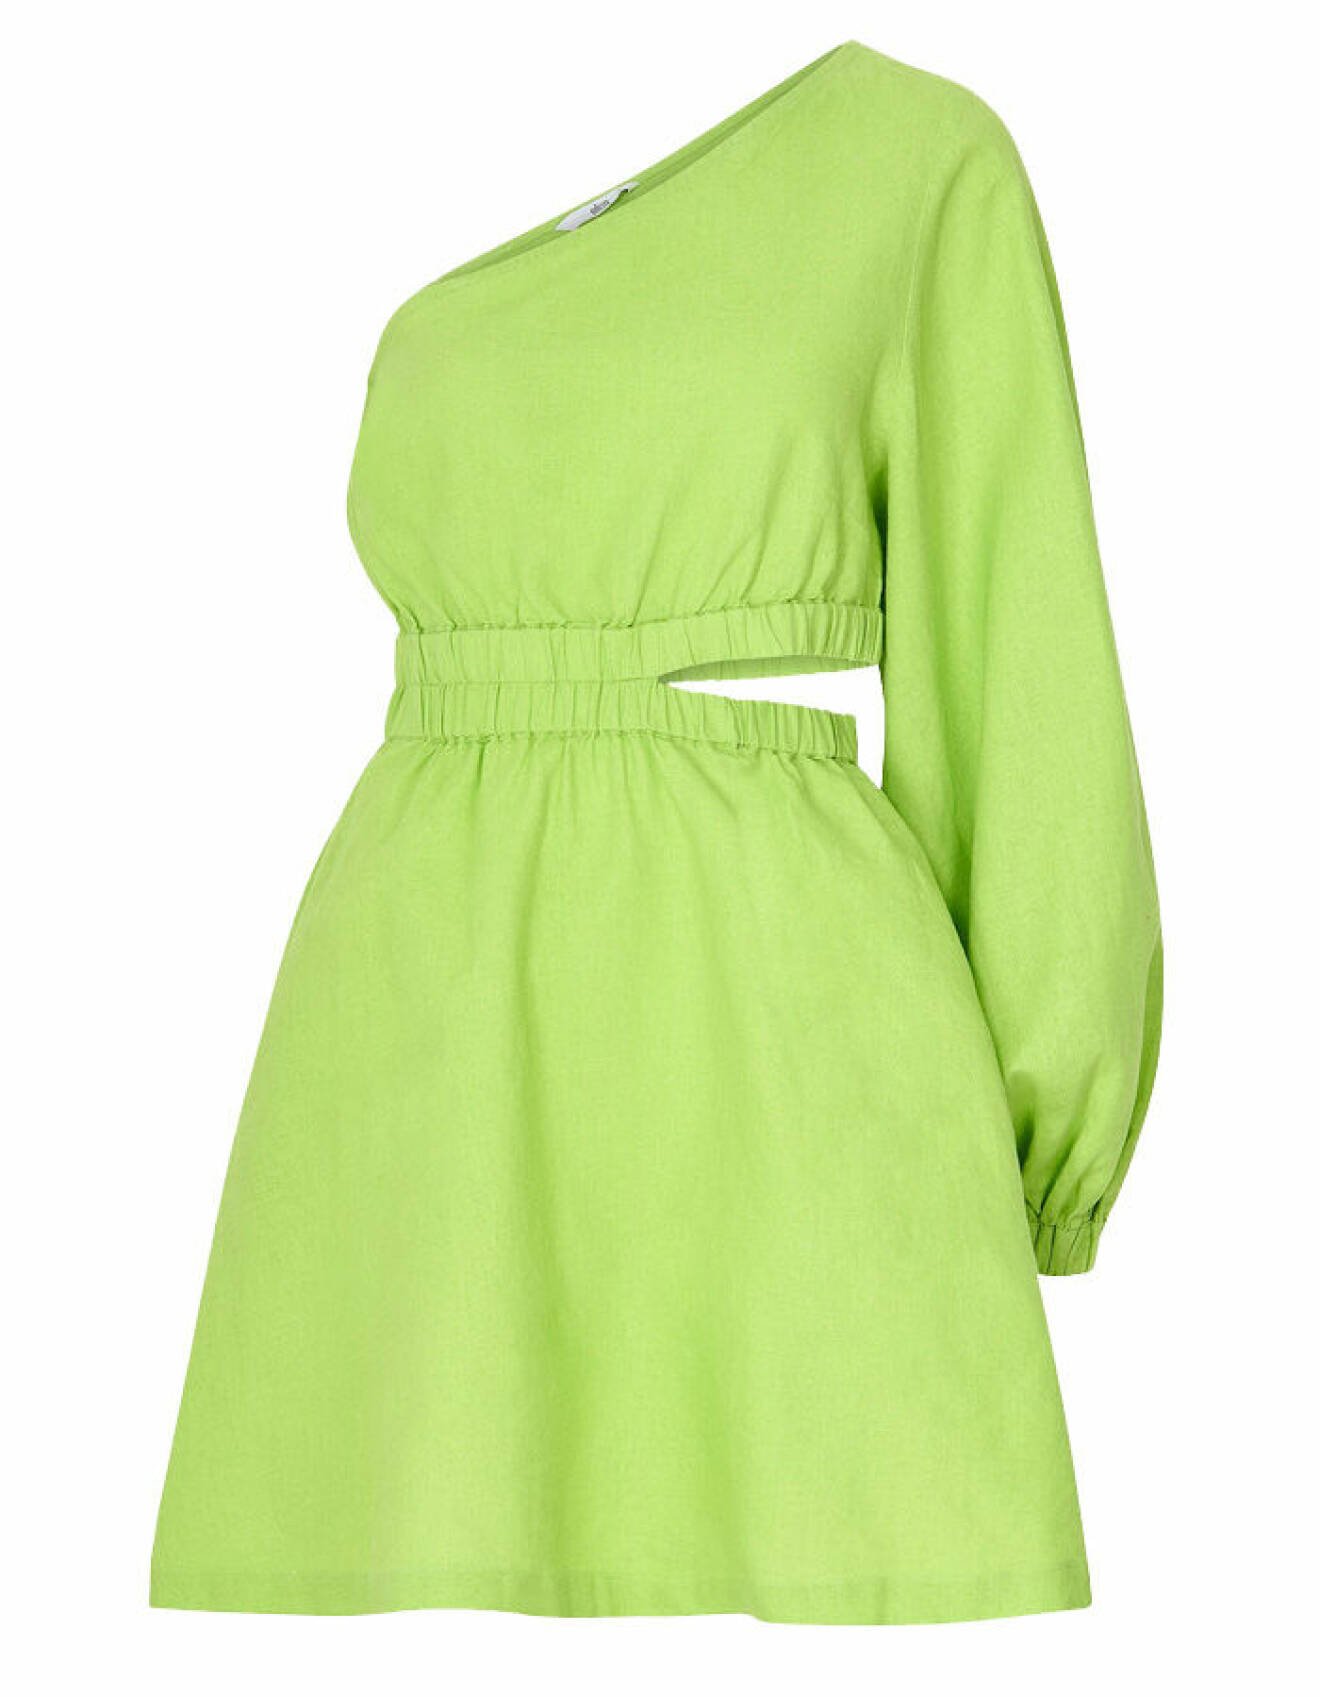 limegrön one shoulder-klänning med cutout från Tine Andrea x Ellos Collection